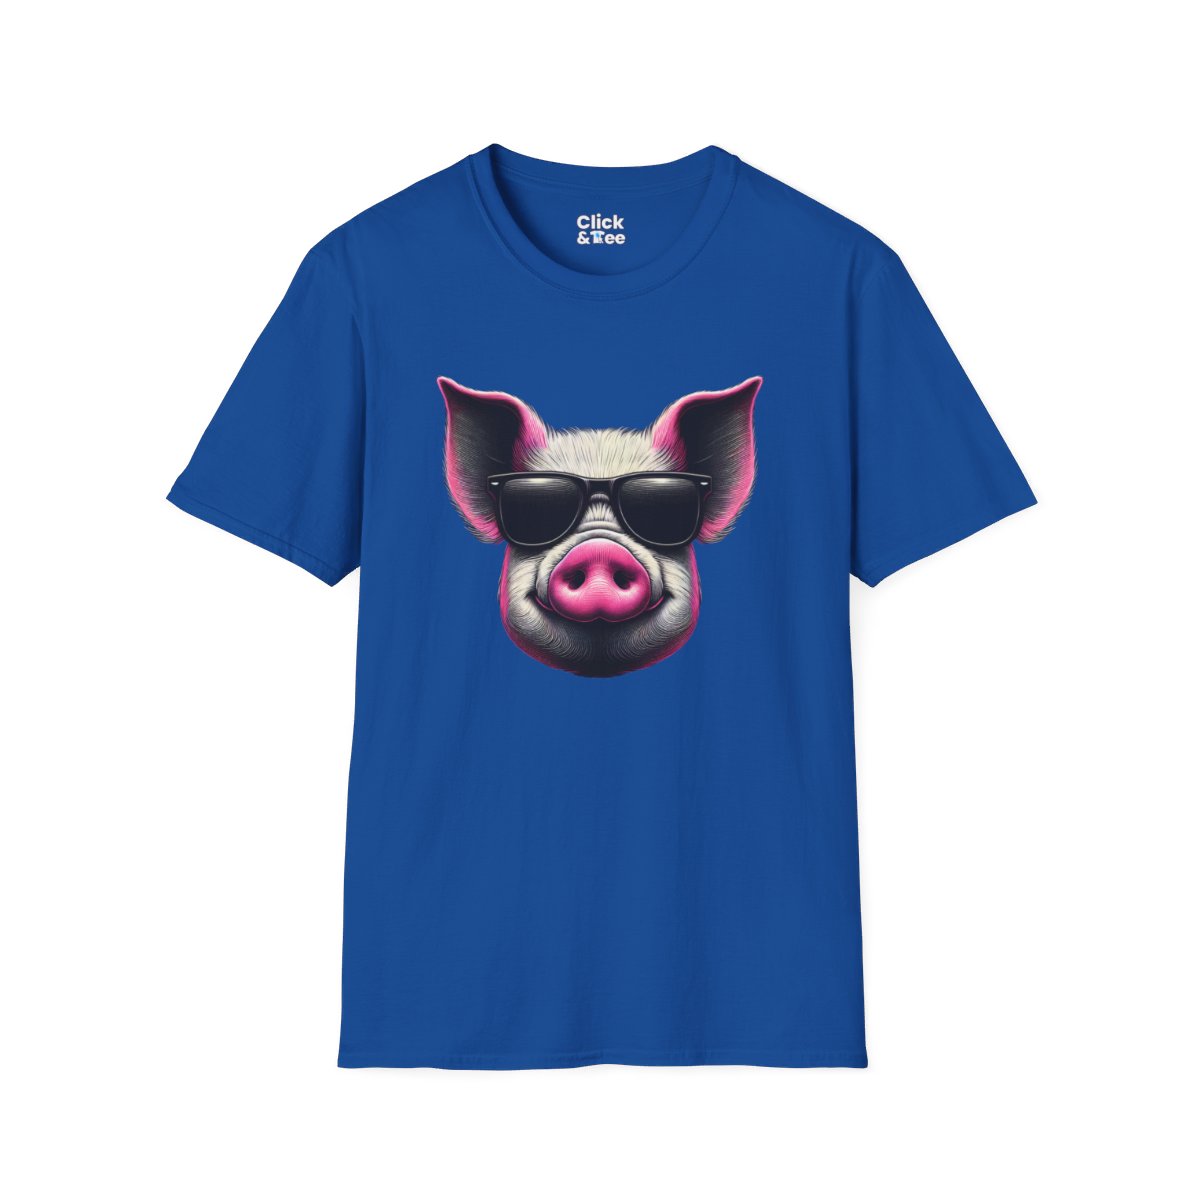 Graphic ArtPink Pig Face Unique T-Shirt Image 17